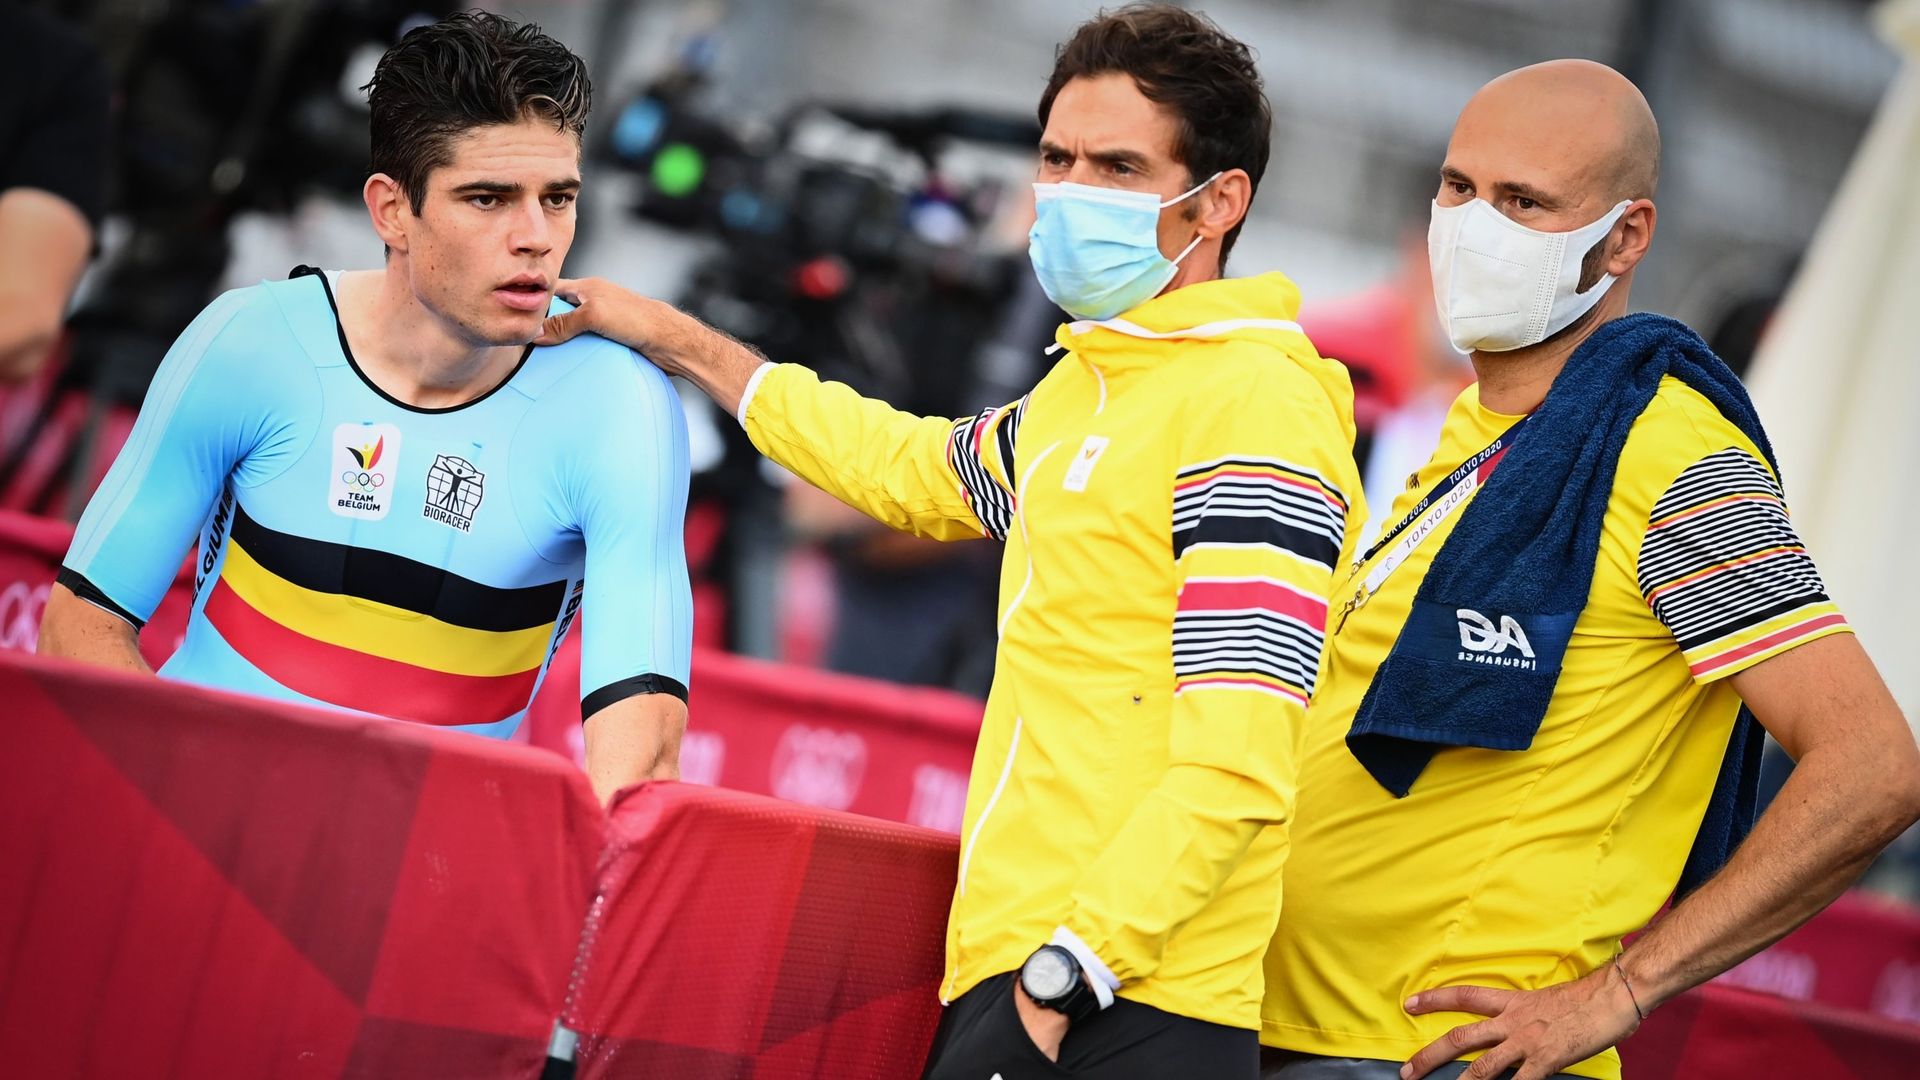 Sven Vanthourenhout et  Wesley Theunis aux côtés de Wout van Aert après le contre-la-montre olympique de Tokyo.